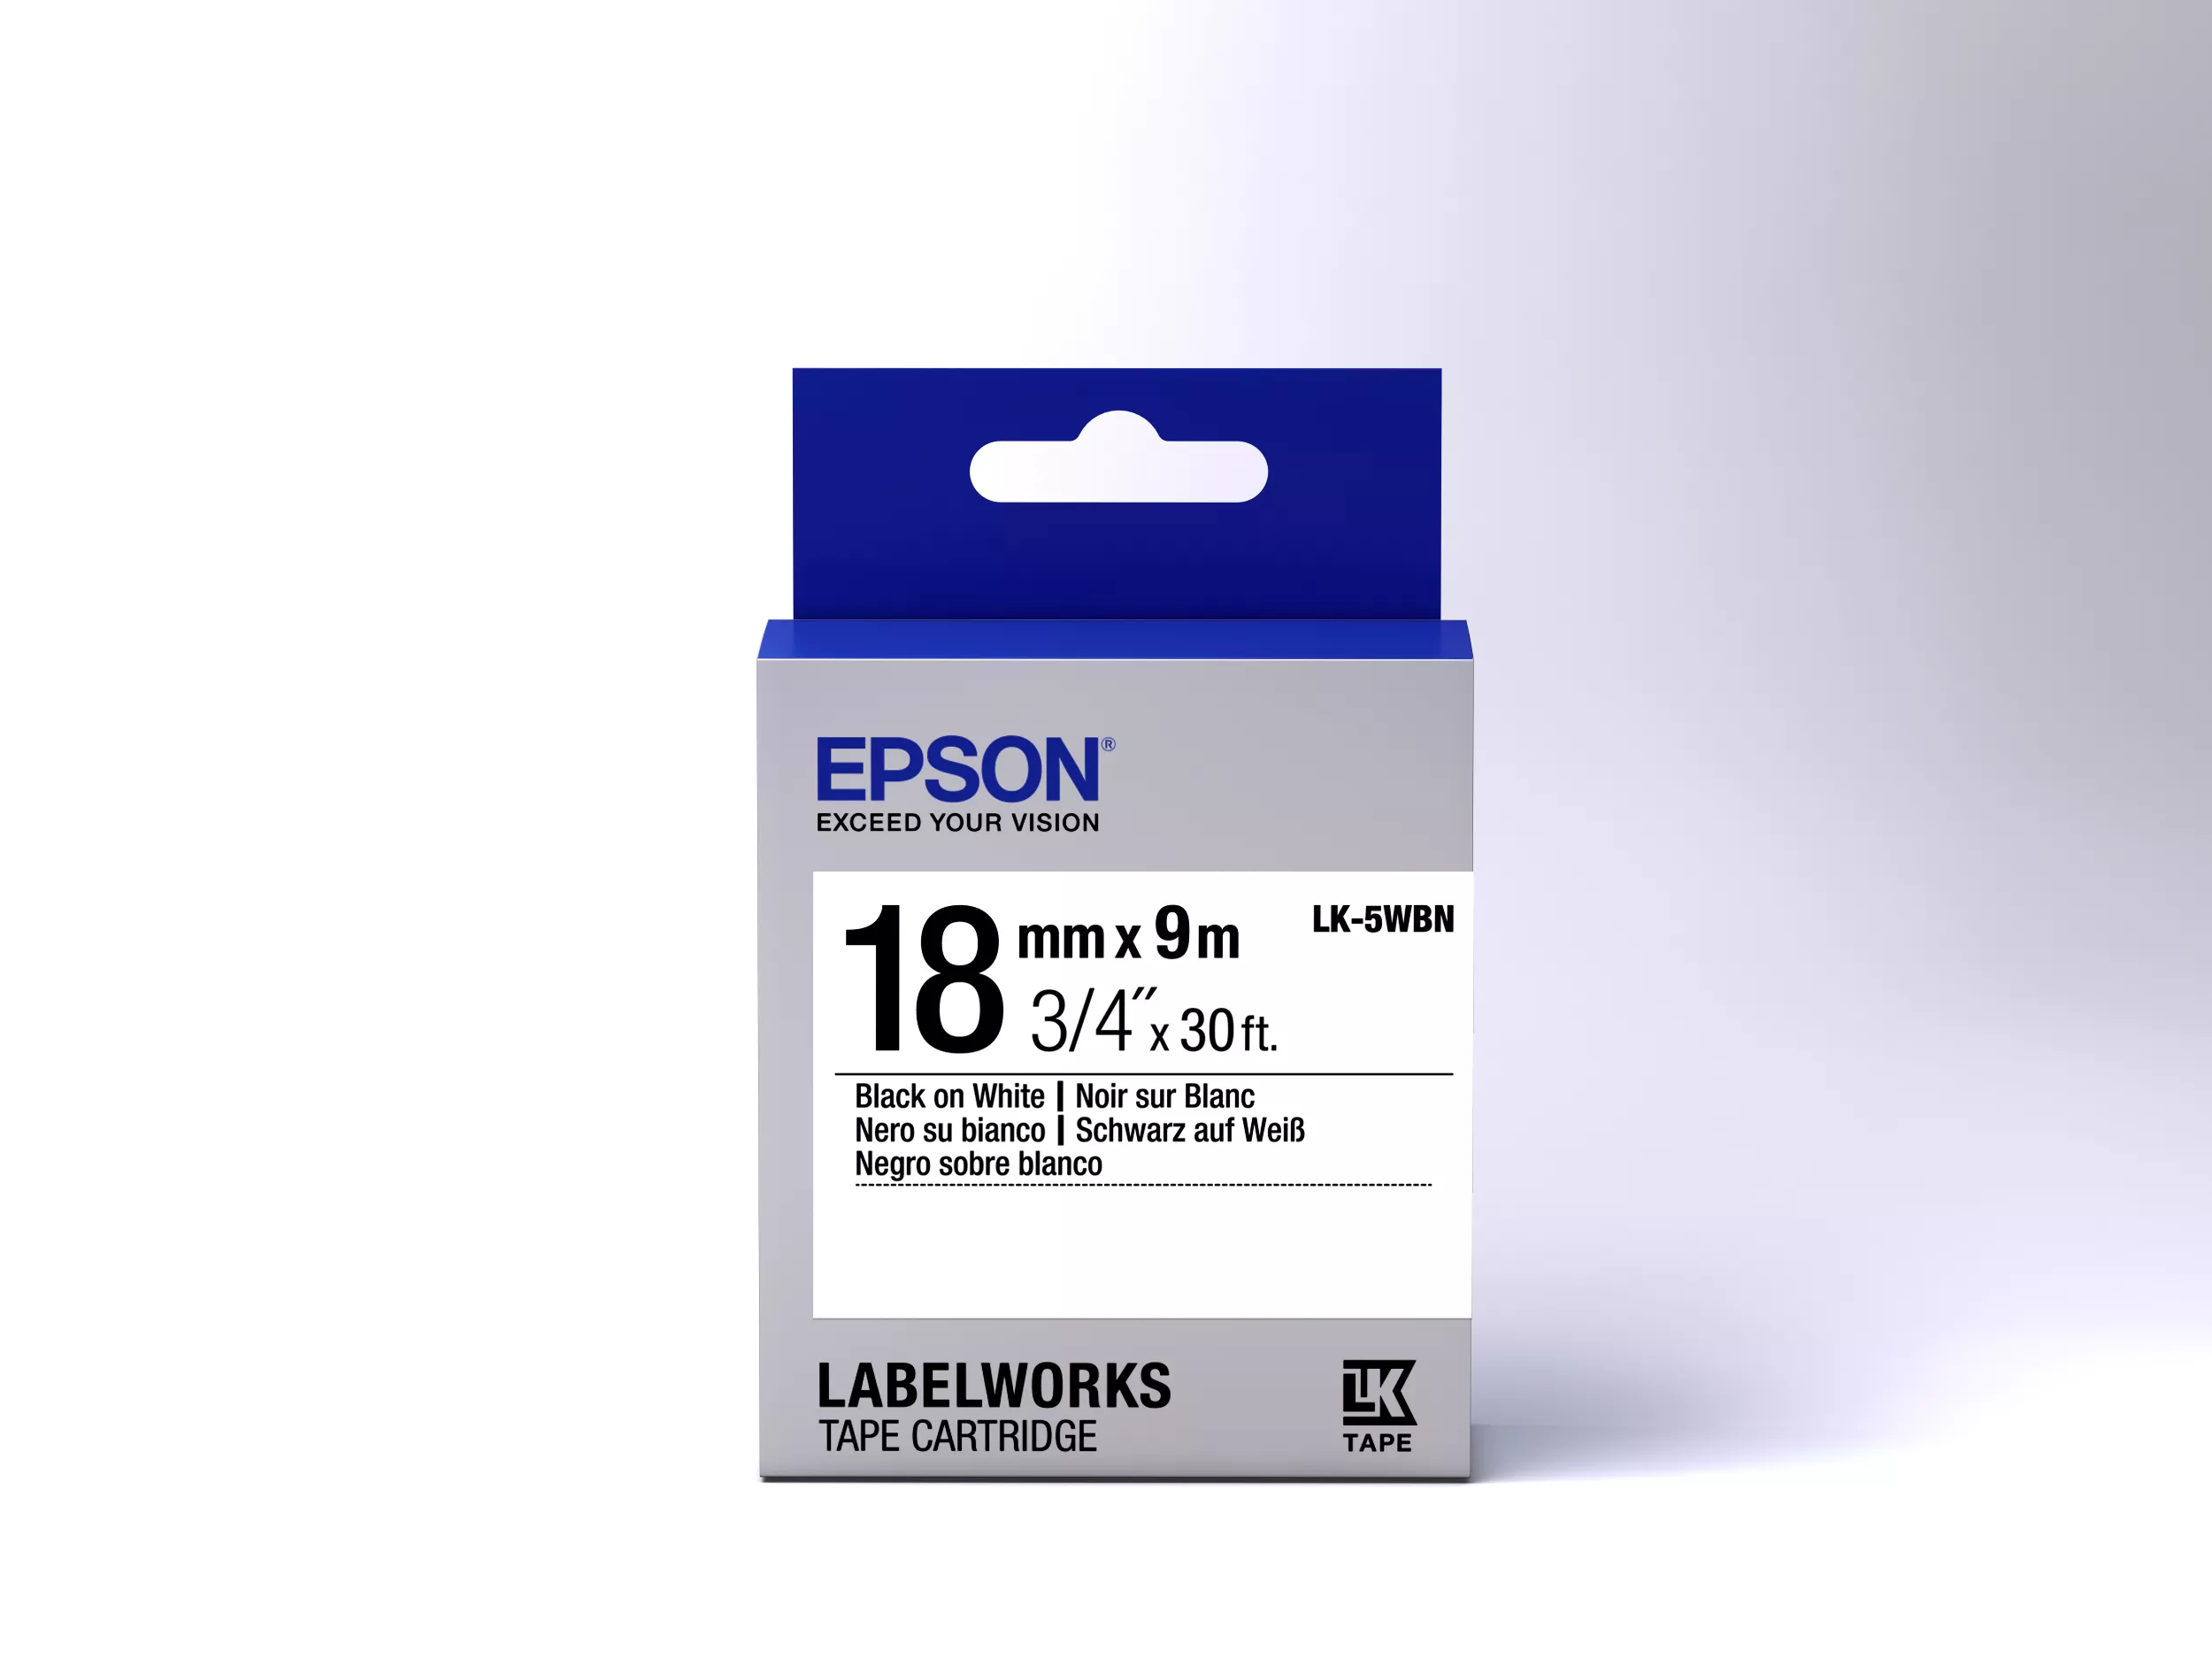 Vente Epson LK-5WBN - Standard - Noir sur Blanc Epson au meilleur prix - visuel 2